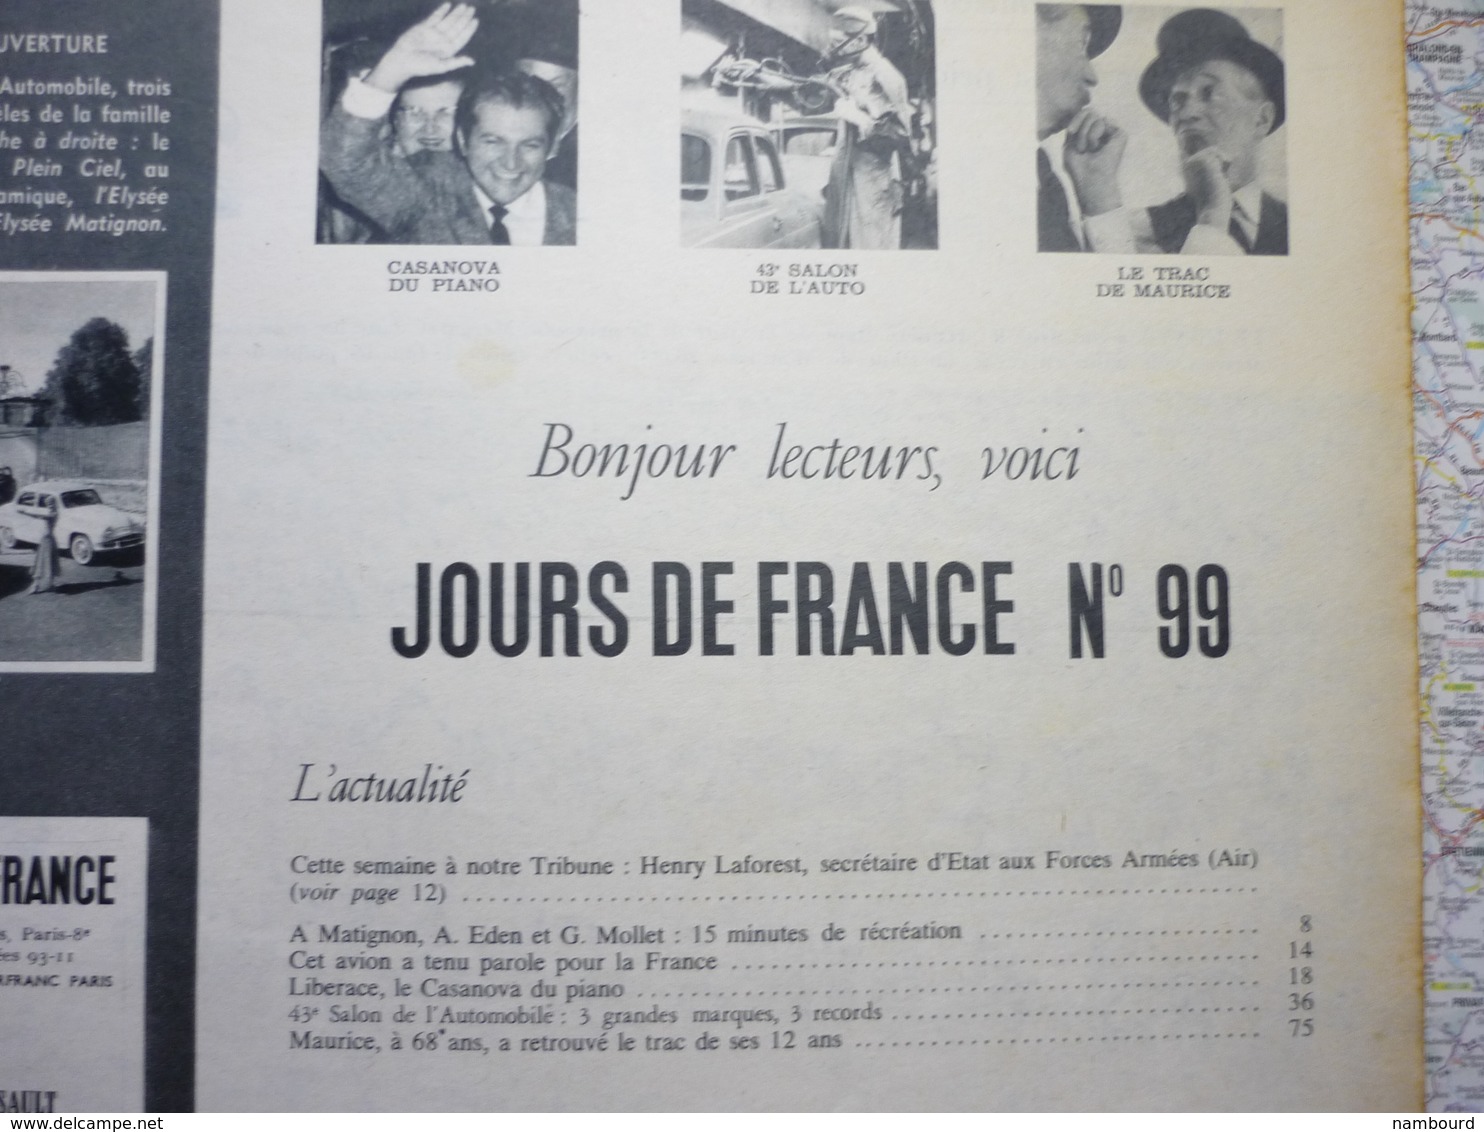 Jour De France N°99 6 Octobre 1956 43-e Salon De L'automobile : La Famille Aronde 57 / Maurice Chevallier / Margaret - Gente